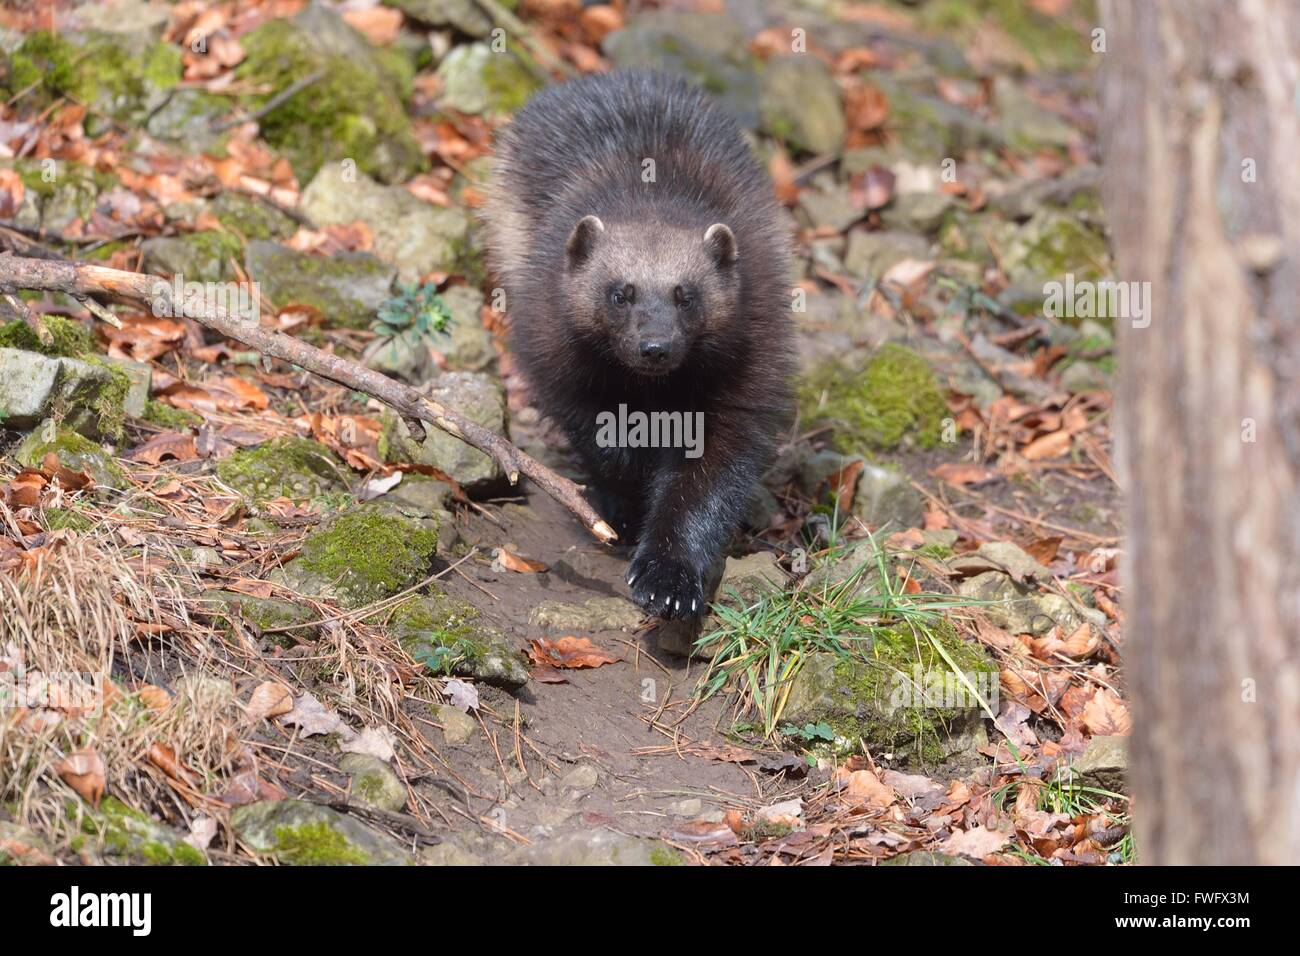 Wolverine - Glutton - Shunk orso - Quichatch (Gulo gulo) semi-animale in cattività Foto Stock